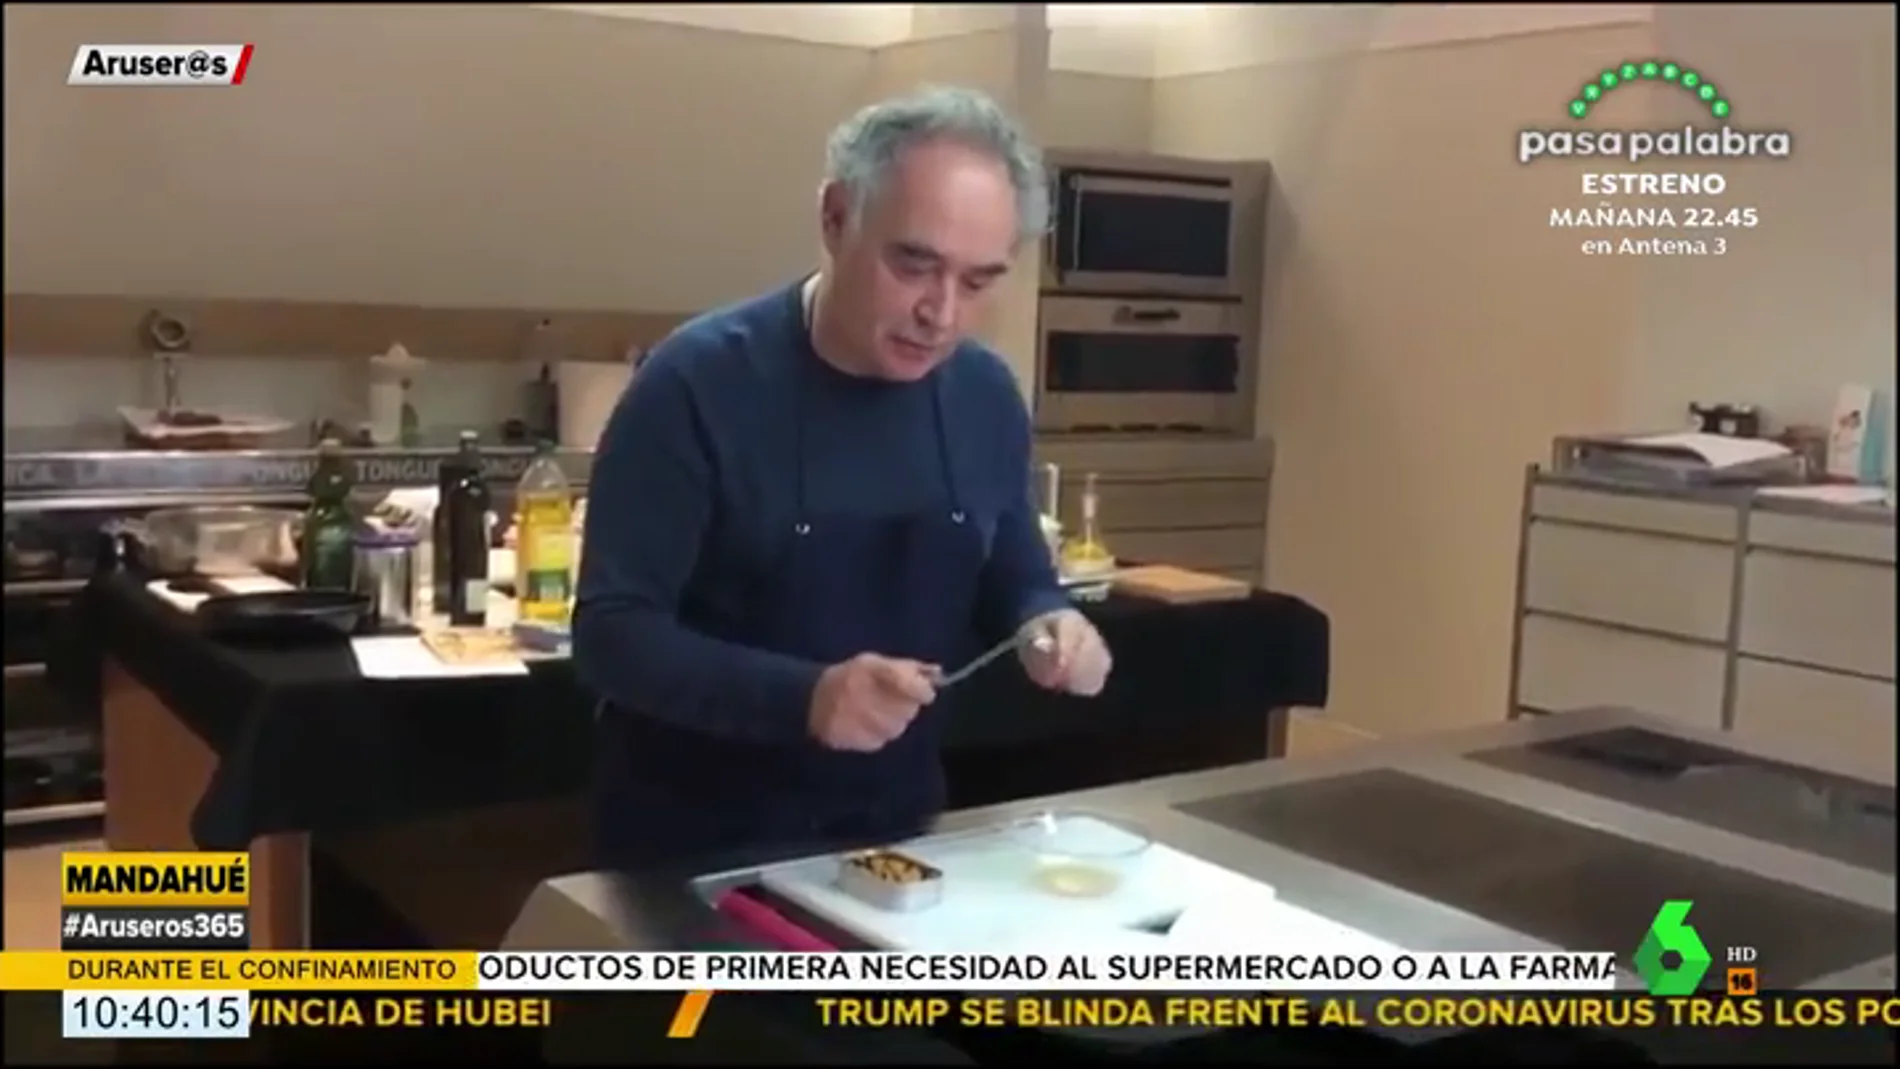 La sorprendente receta de Ferran Adrià hecha con una lata de mejillones que te dejará en shock 